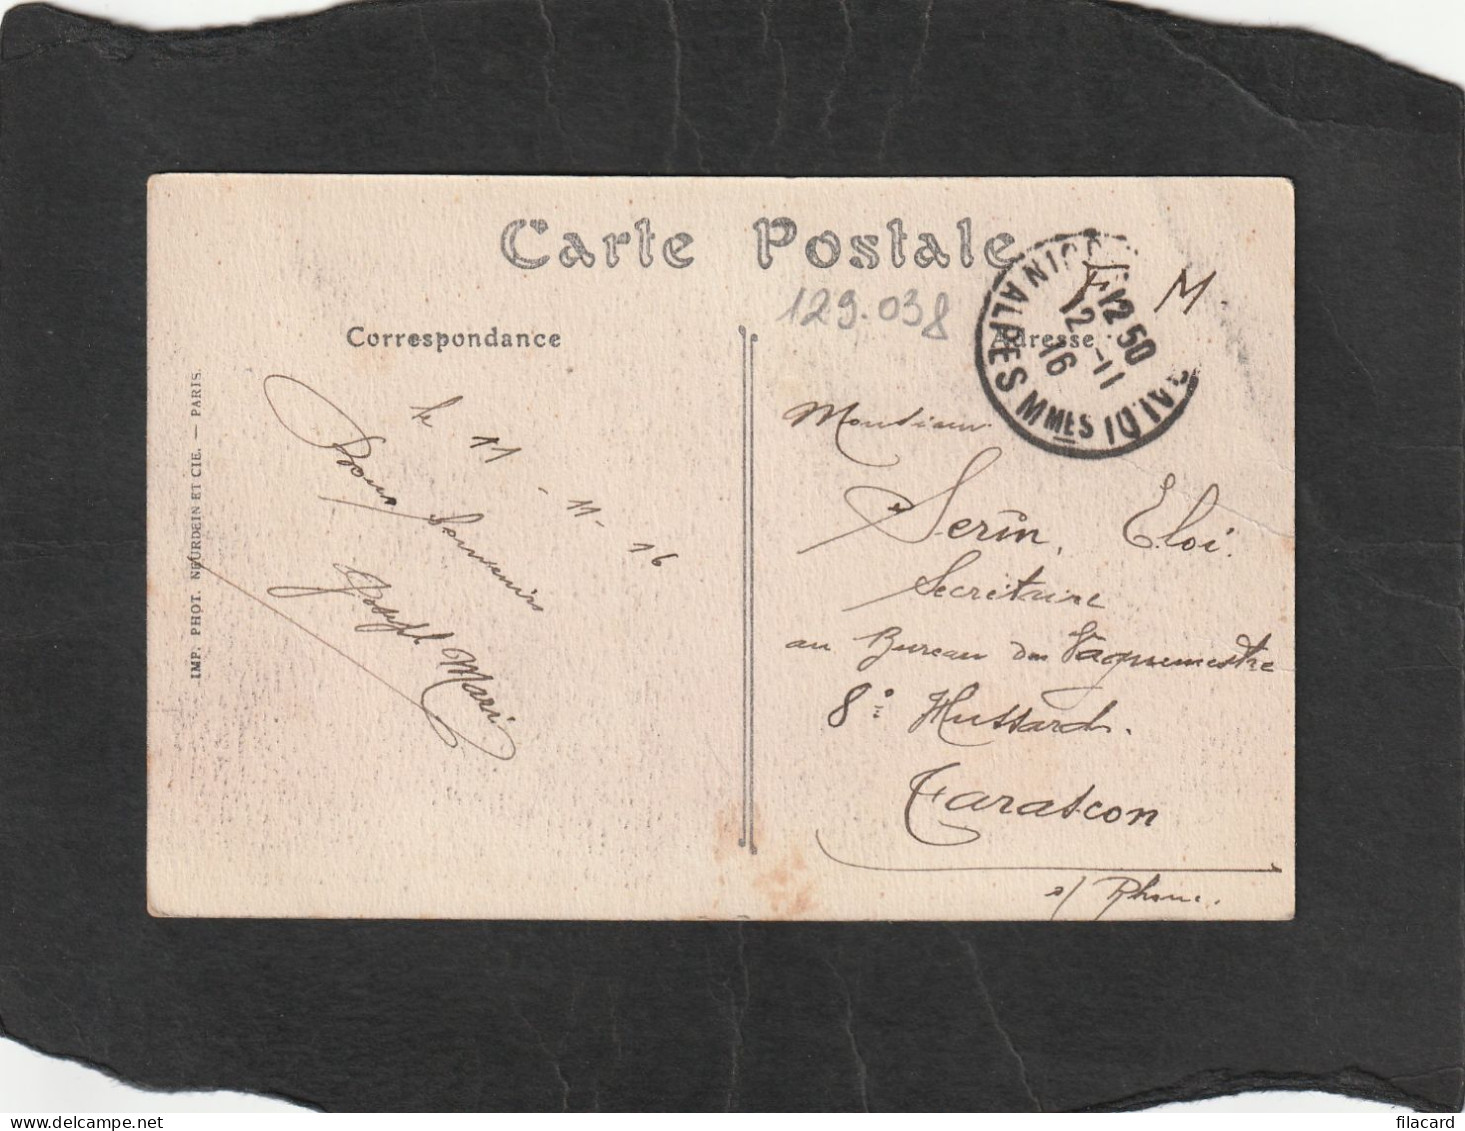 129038         Francia,     Nice,   L"Avenue   De La  Gare,   VGSB   1916 - Cartas Panorámicas